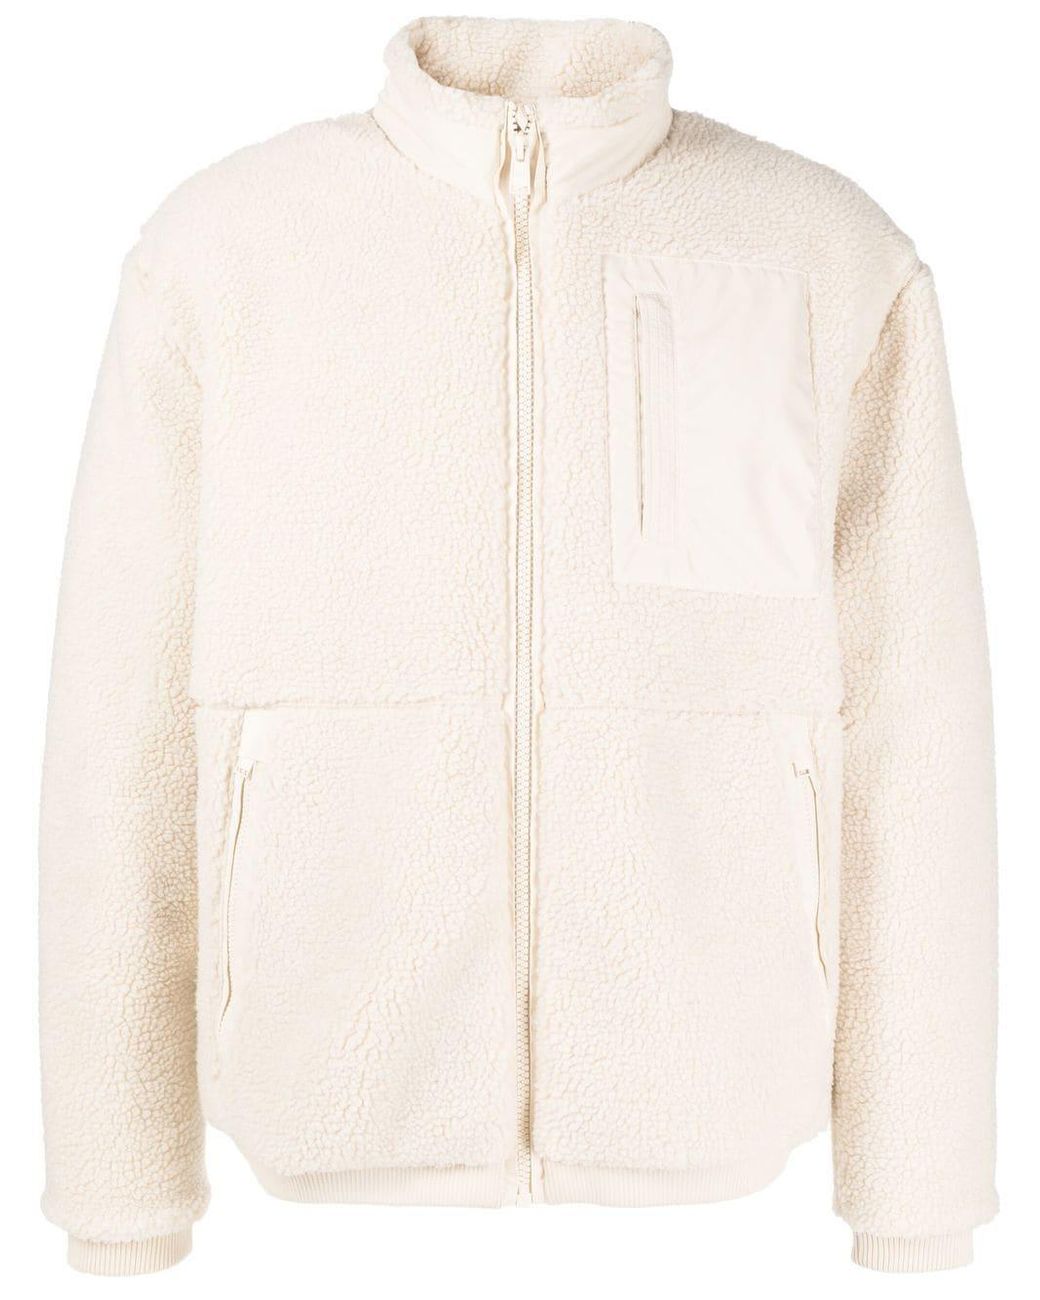 BOSS by HUGO BOSS Zip-up Fleece Jacket in Natural for Men | Lyst UK